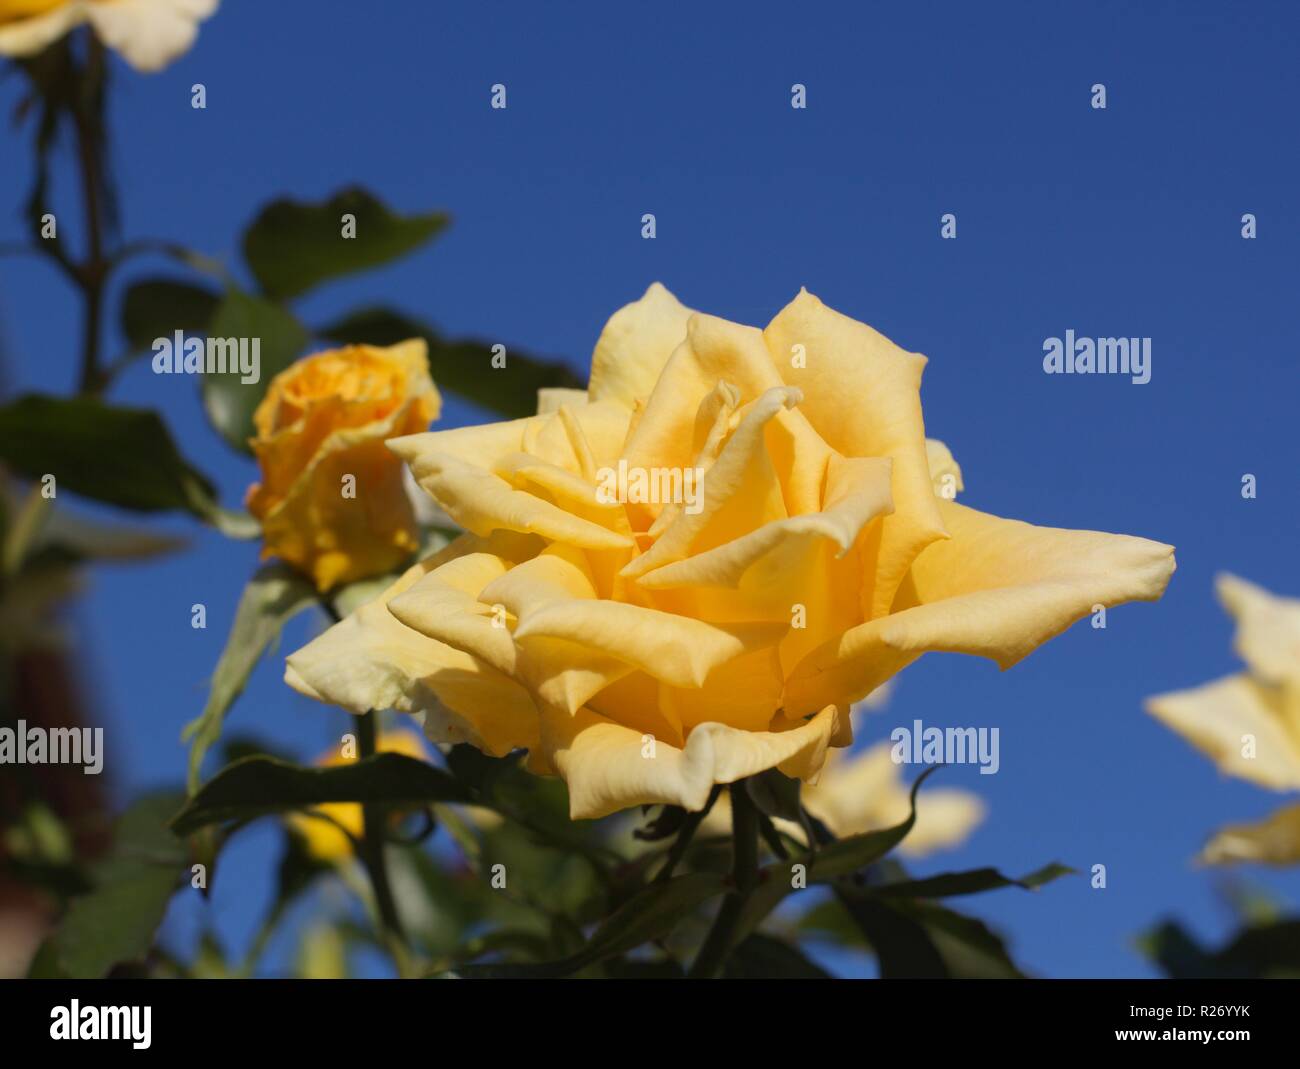 yellow rose Stock Photo